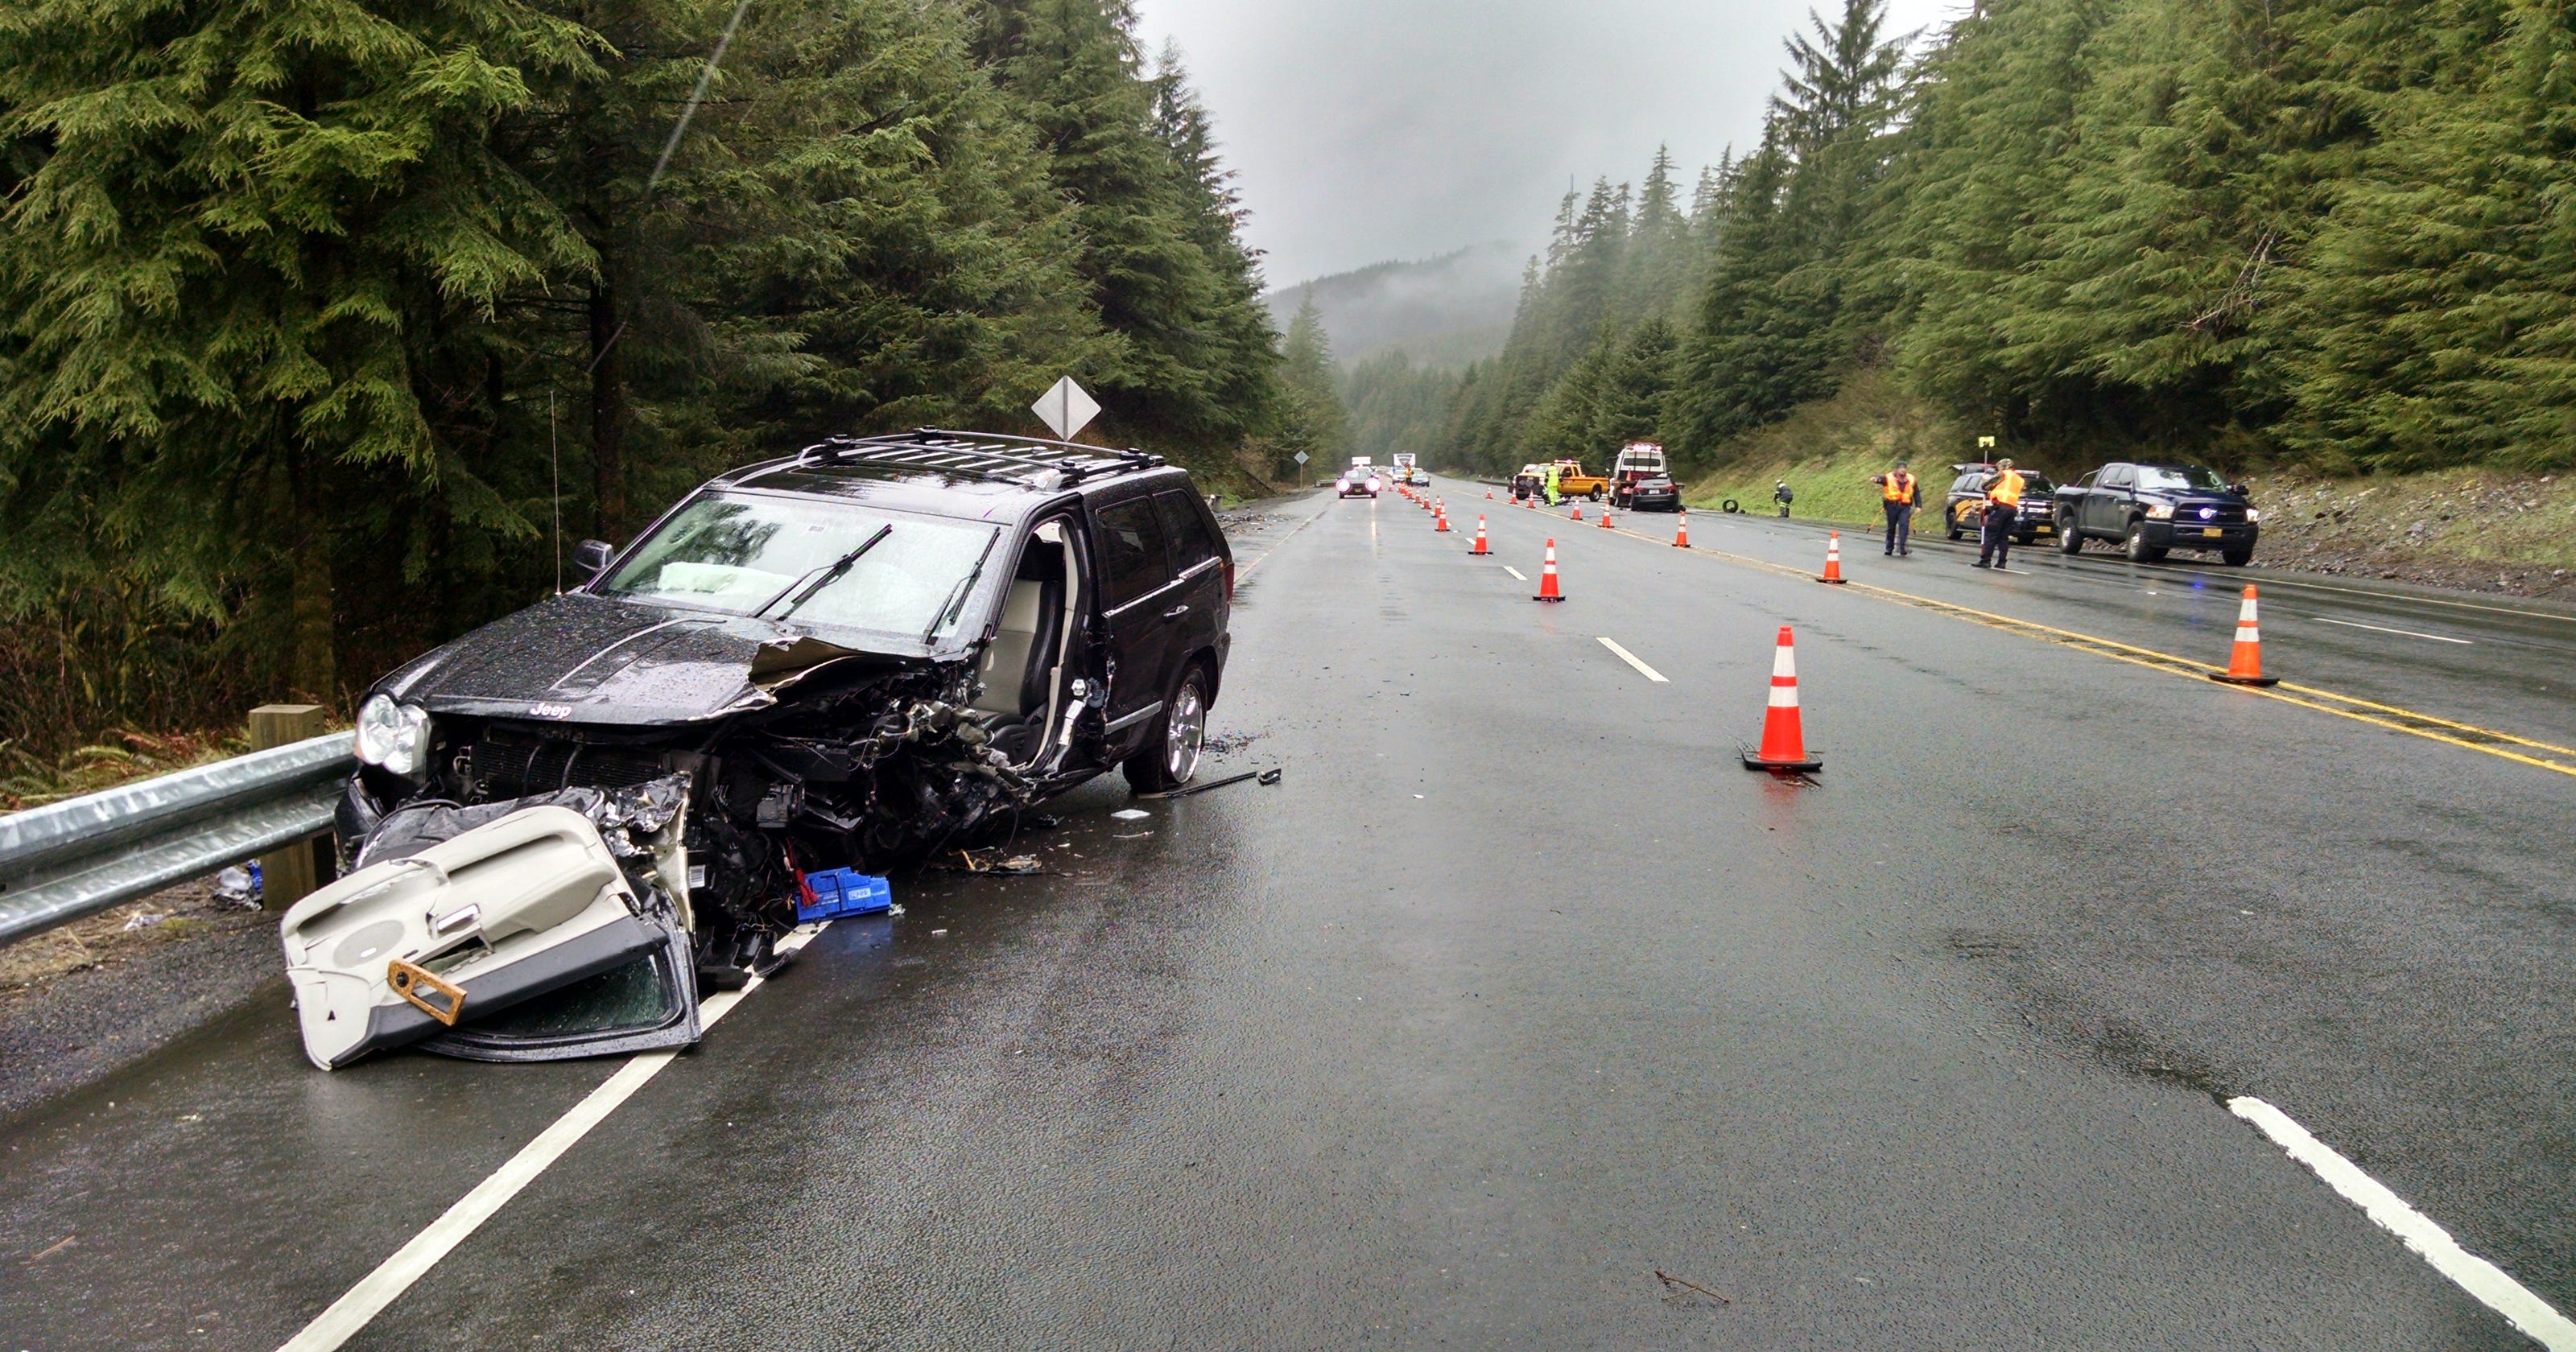 One dead in fatal crash near Oregon coast on Highway 26